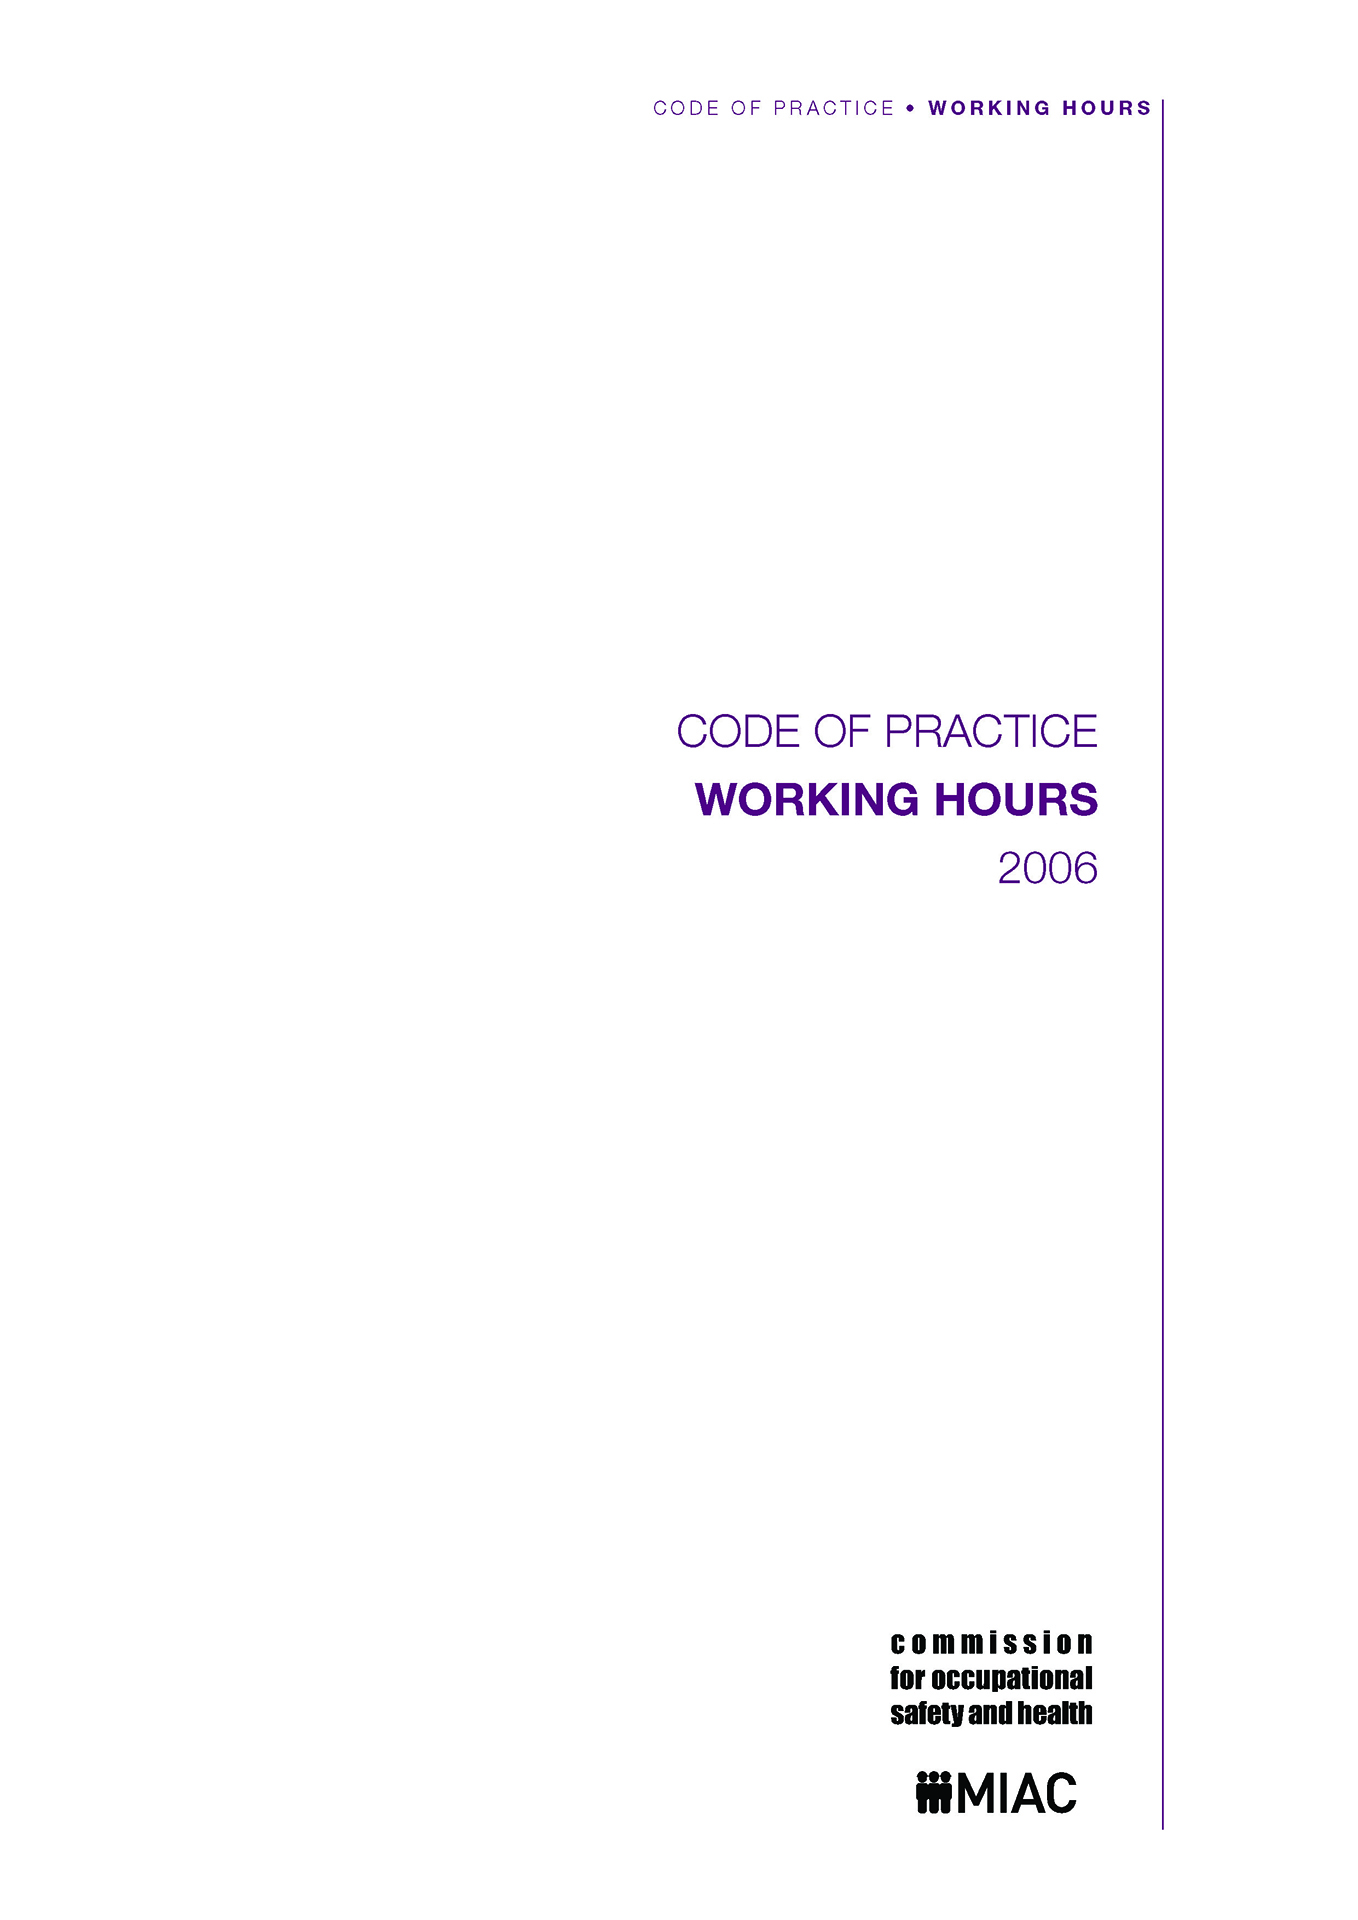 Code of practice: Working hours